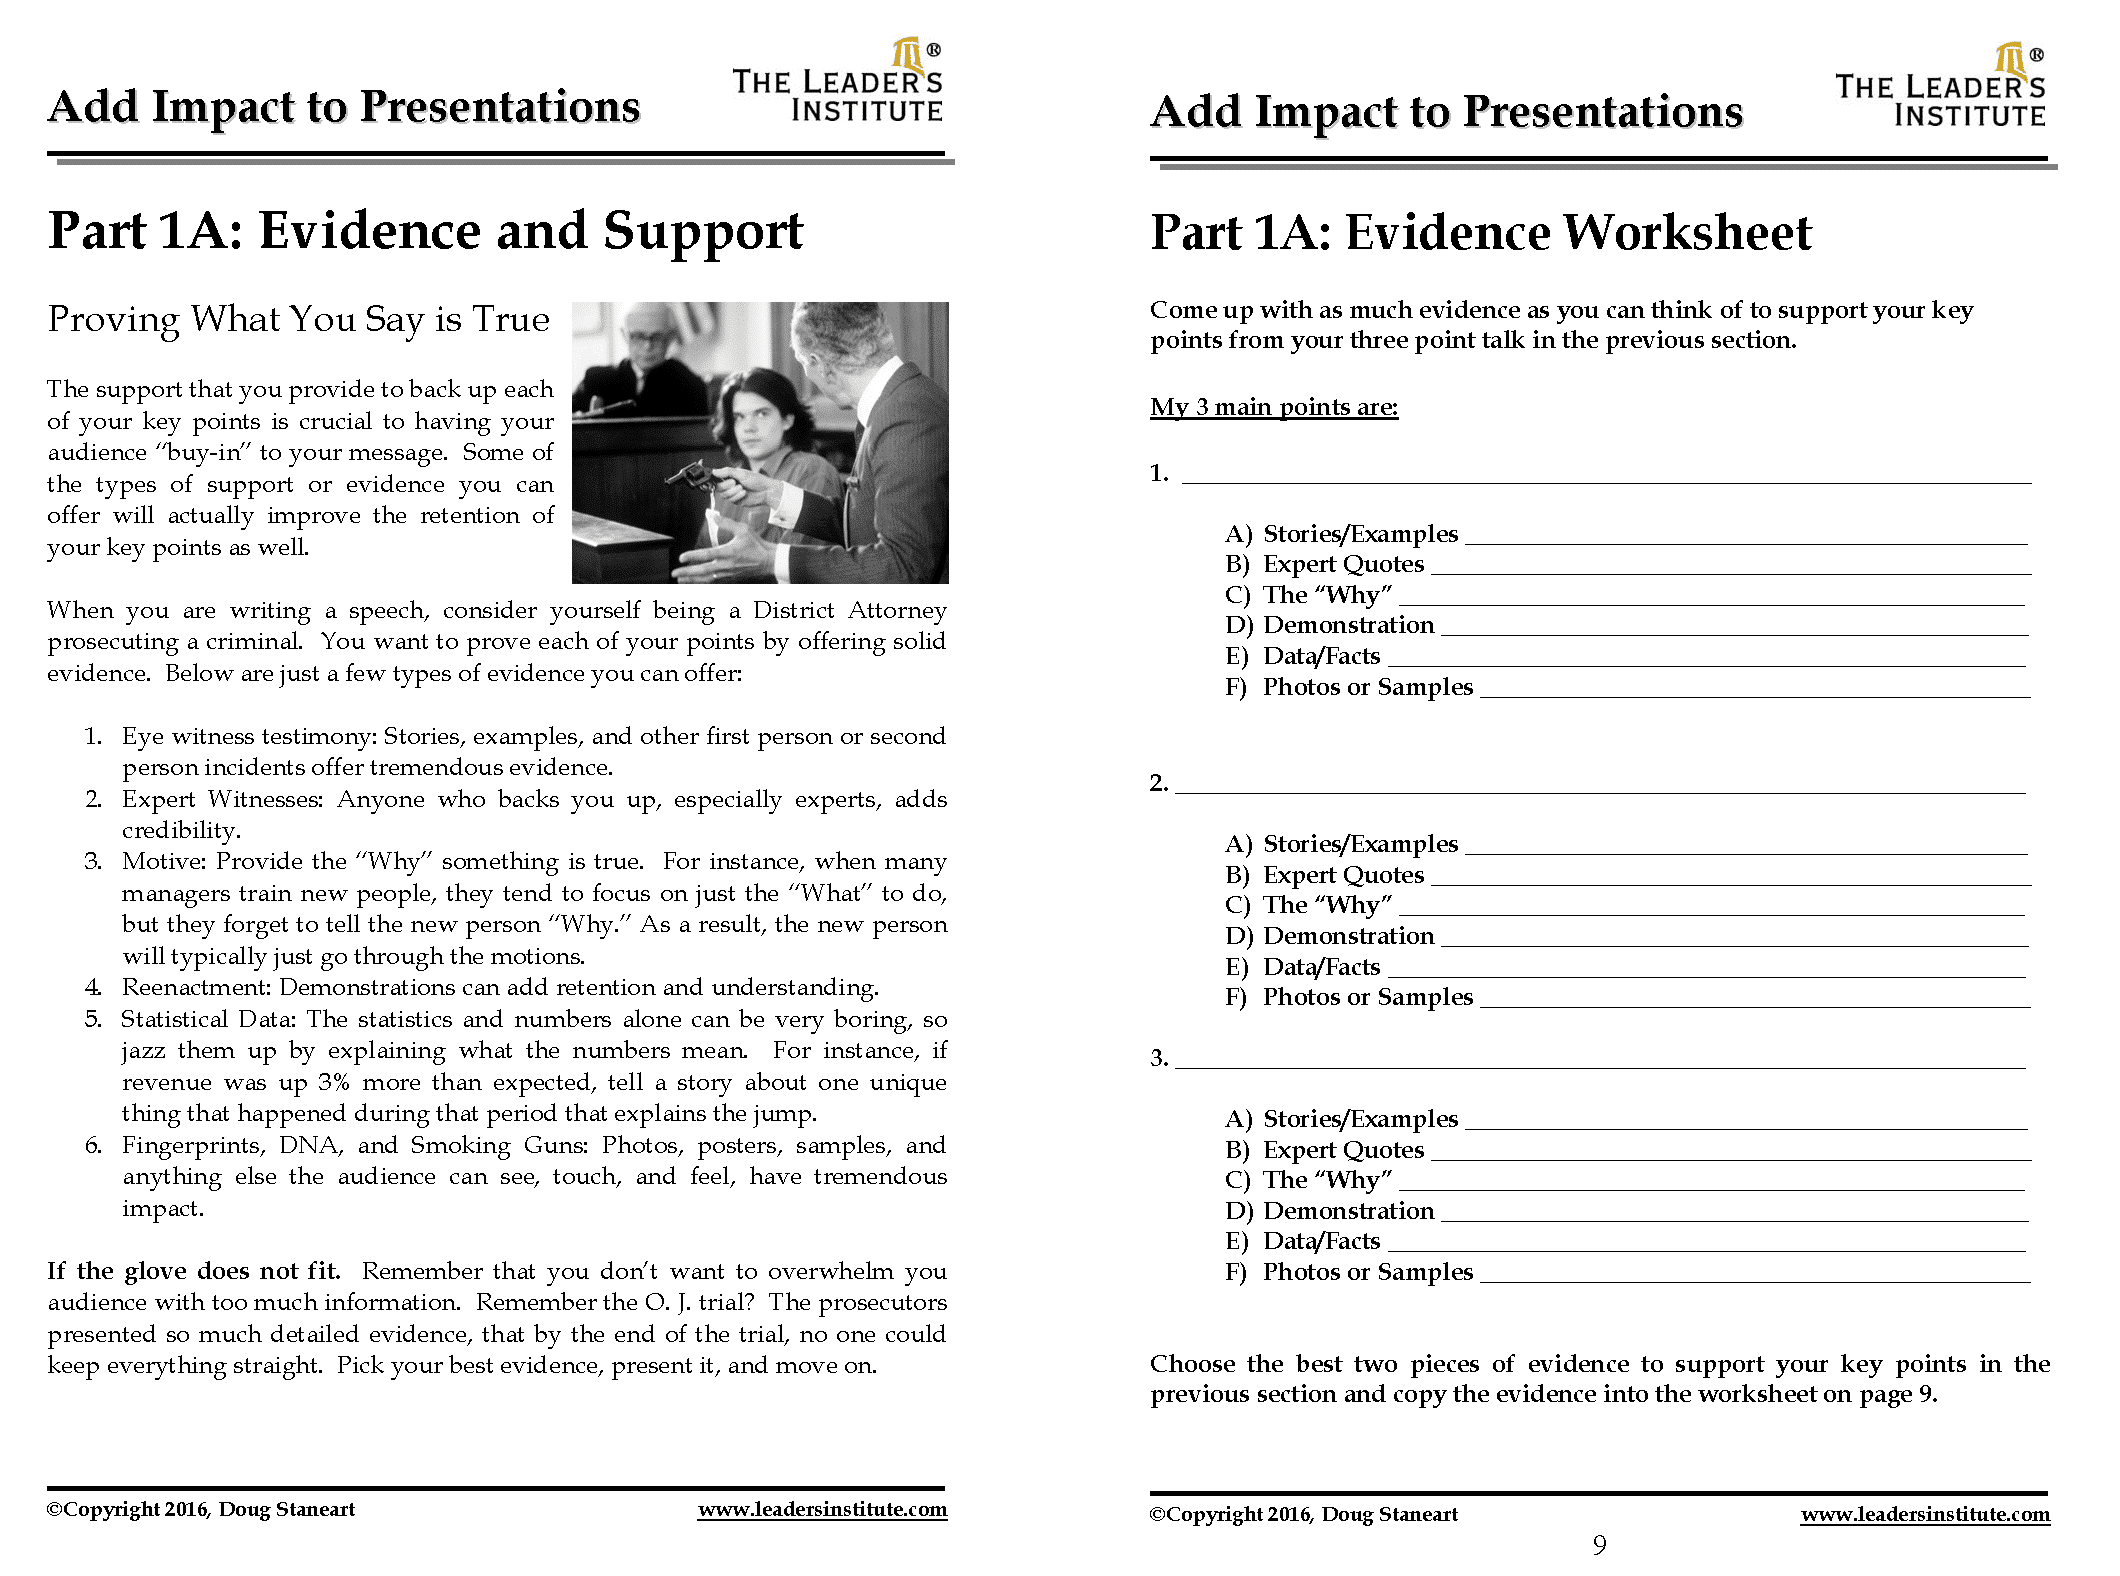 handouts in presentation